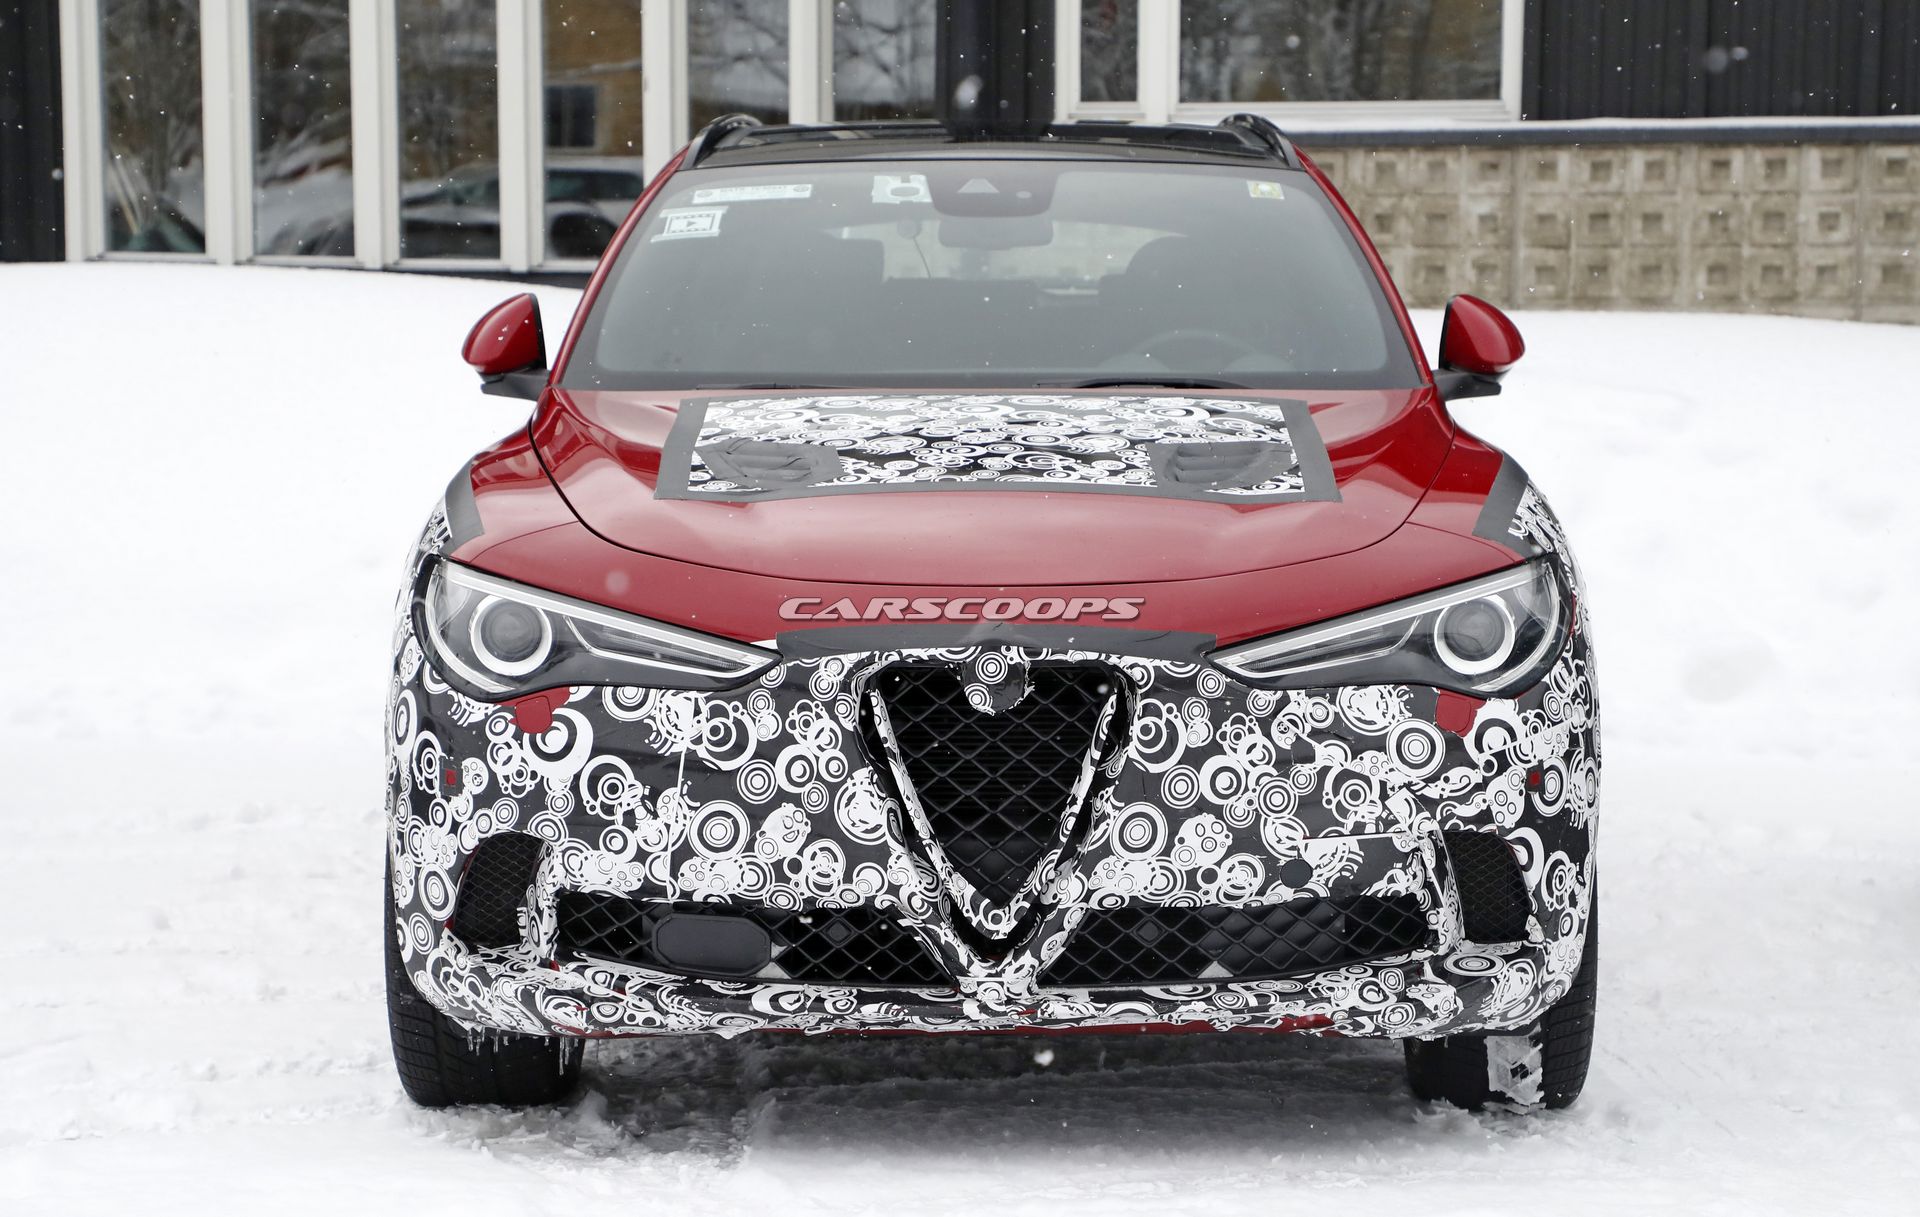 Gncellenen Alfa Romeo Stelvio resim galerisi (22.03.2019)